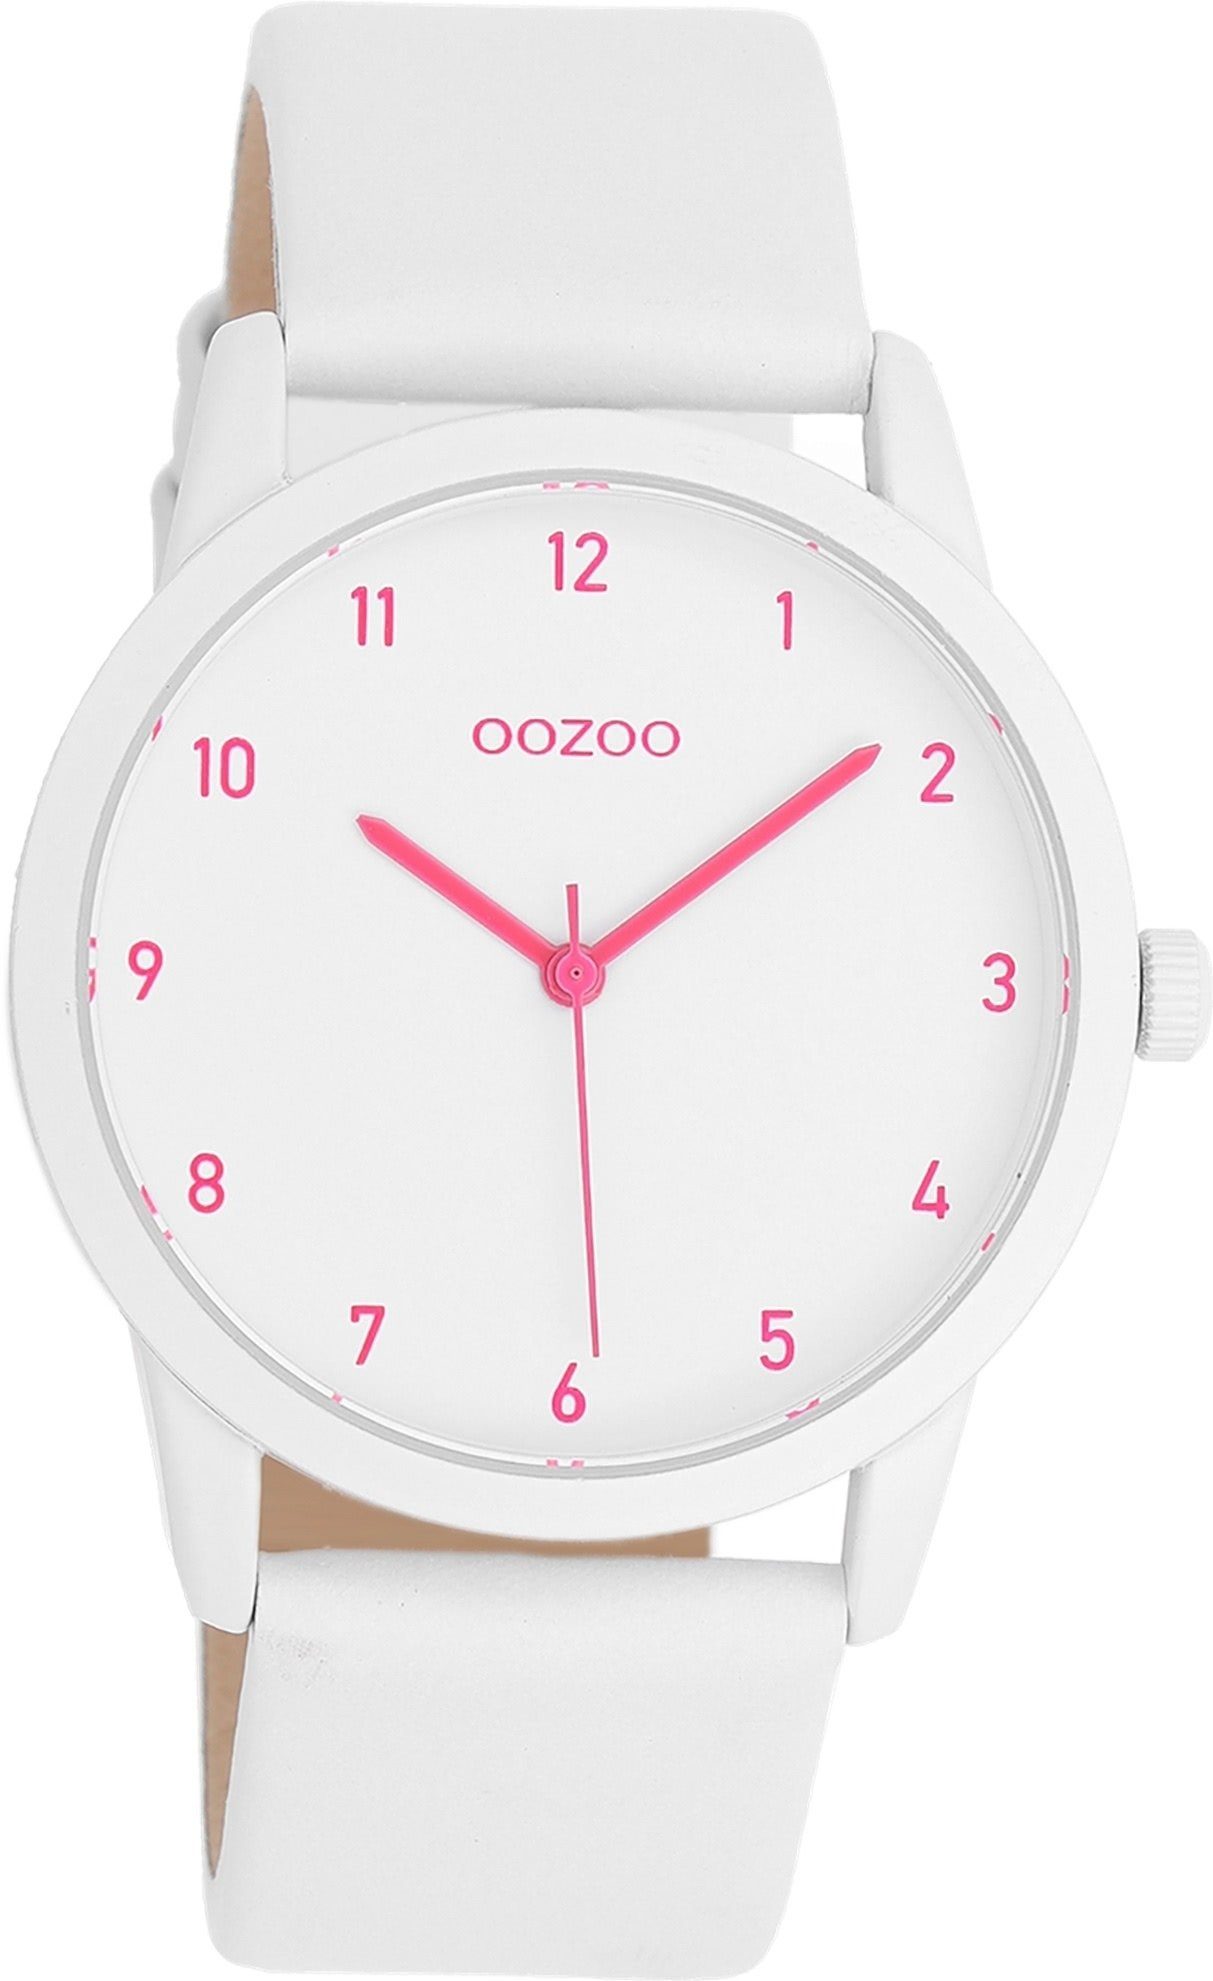 OOZOO Quarzuhr Oozoo Damen Armbanduhr Timepieces Analog, Damenuhr rund,  mittel (ca. 38mm) Lederarmband, Fashion-Style, Modische Uhr für Damen und  Mädchen mit hochwertigem Miyota Quarzlaufwerk